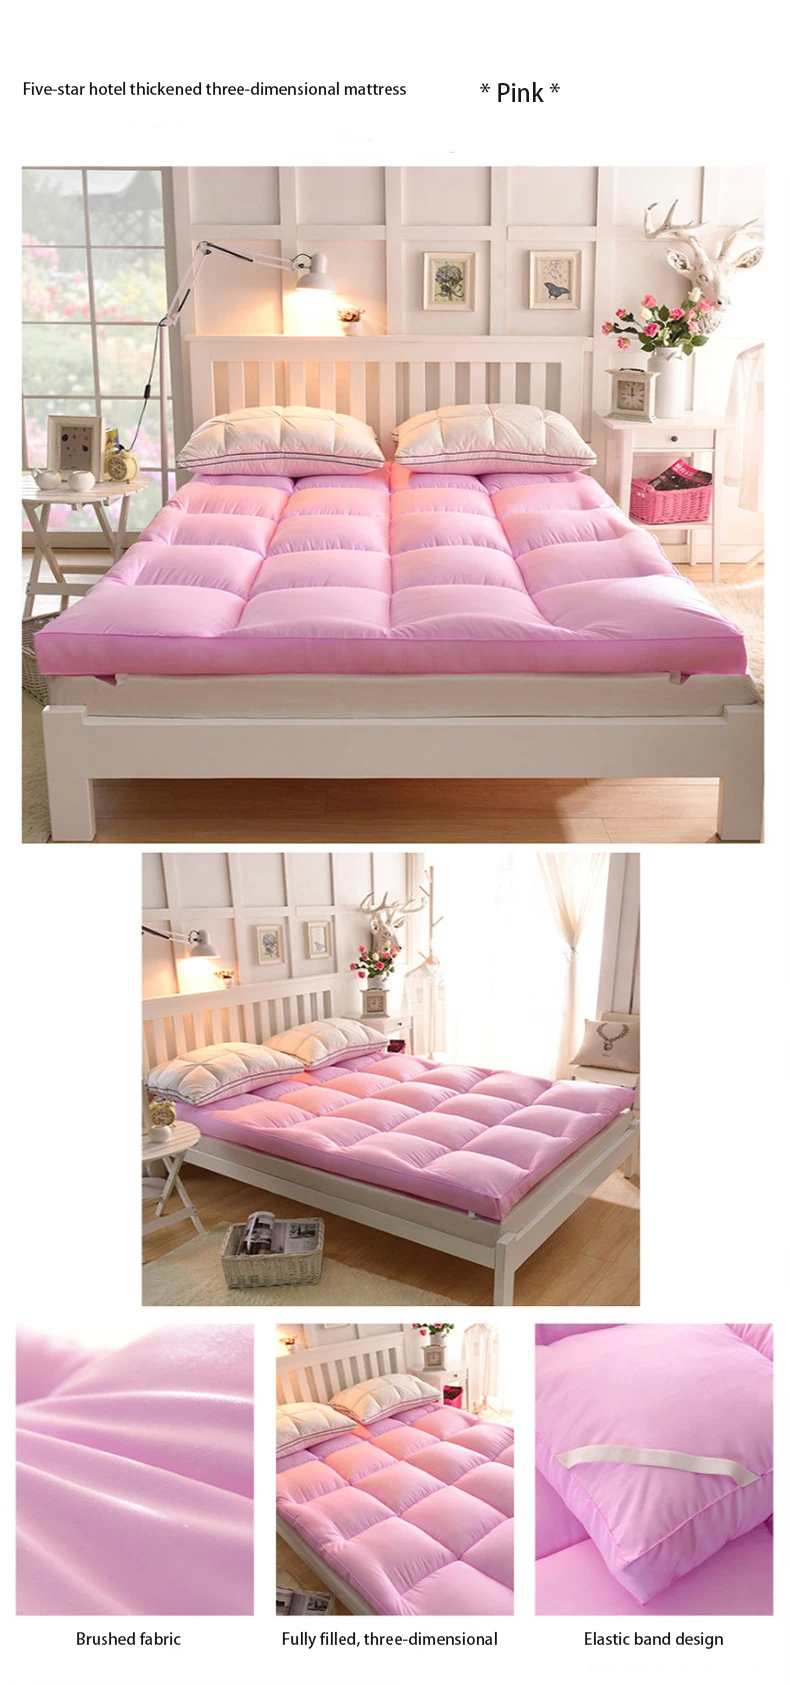 Стиль Высокая устойчивость мягкий матрас классический дизайн высокое качество Толстая теплая удобная кровать матрац татами